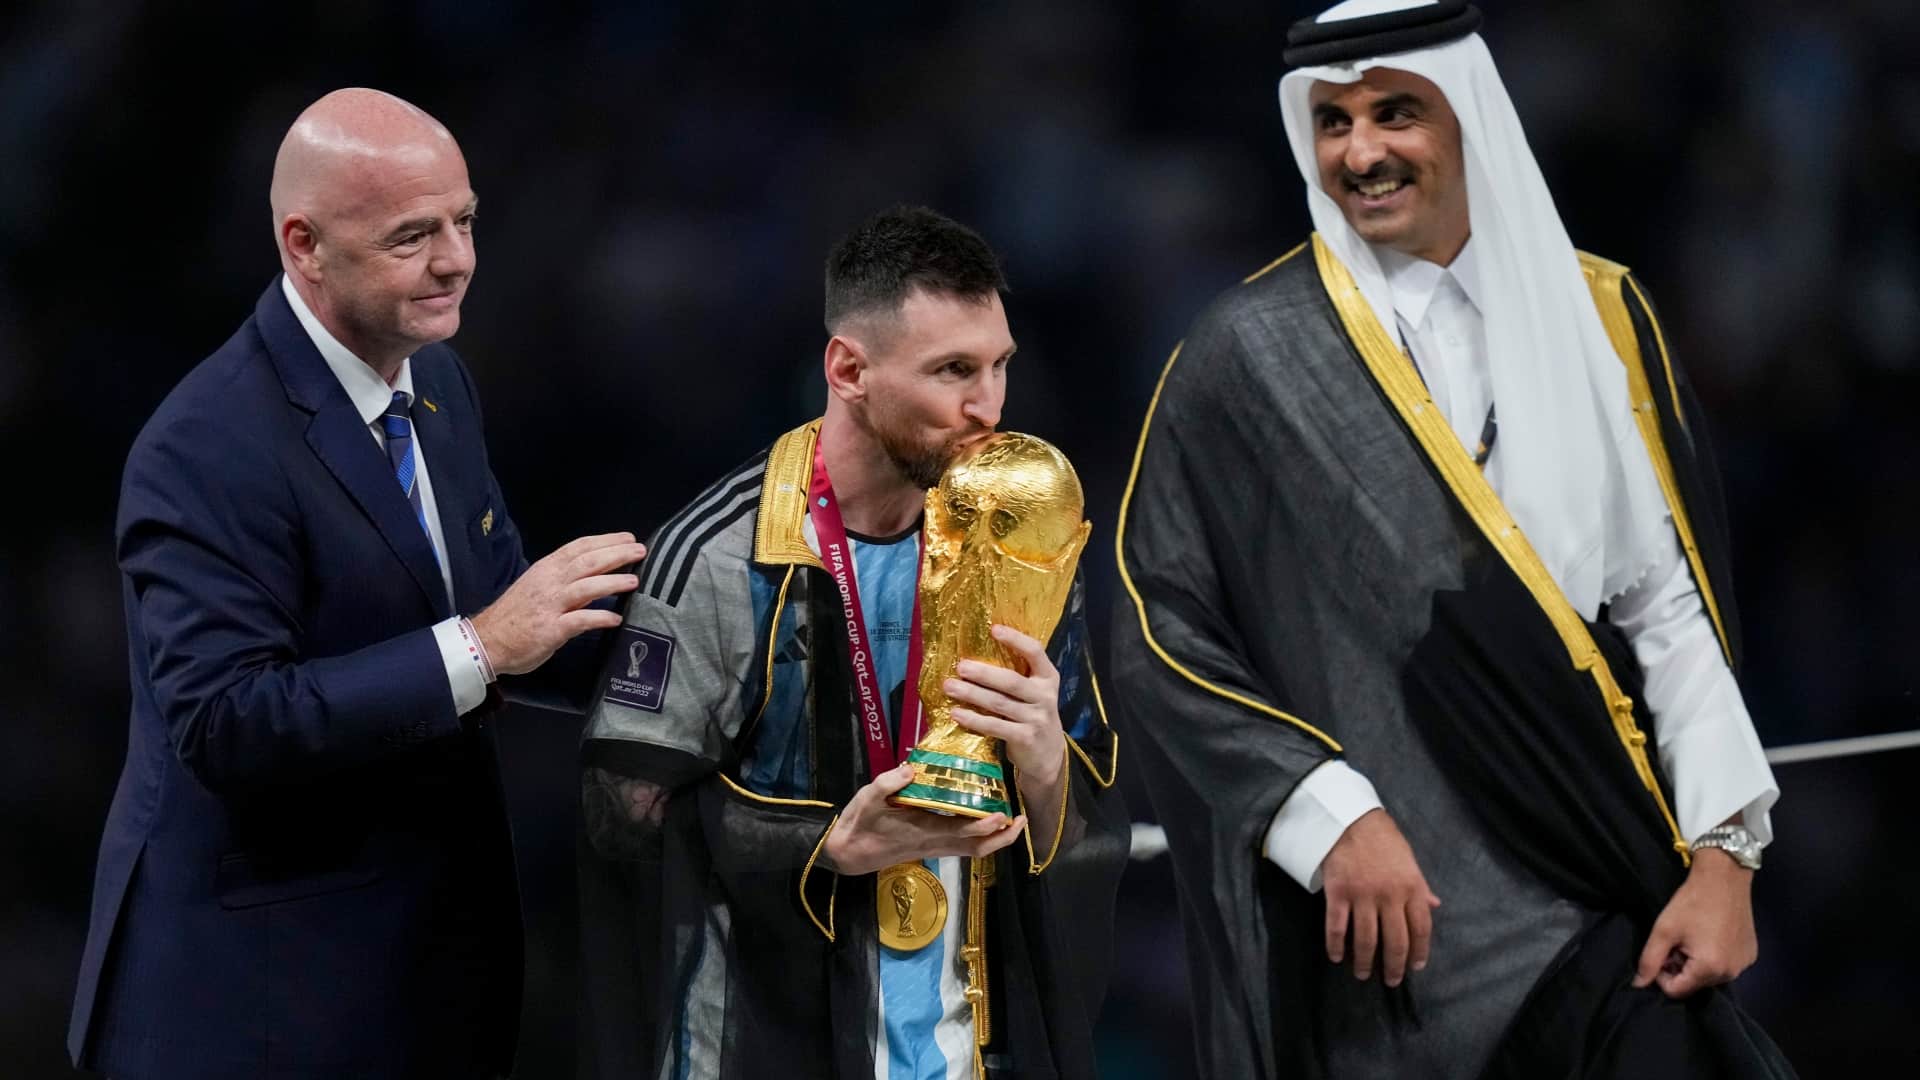 Điều gì lại lôi cuốn hơn khi Messi mặc chiếc áo choàng đen trong lúc nâng cao chiếc cúp vàng tại World Cup? Hãy cùng xem hình ảnh này để nhìn thấy vẻ đẹp kiêu sa, đầy sức mạnh của chàng tiền đạo tài năng này.